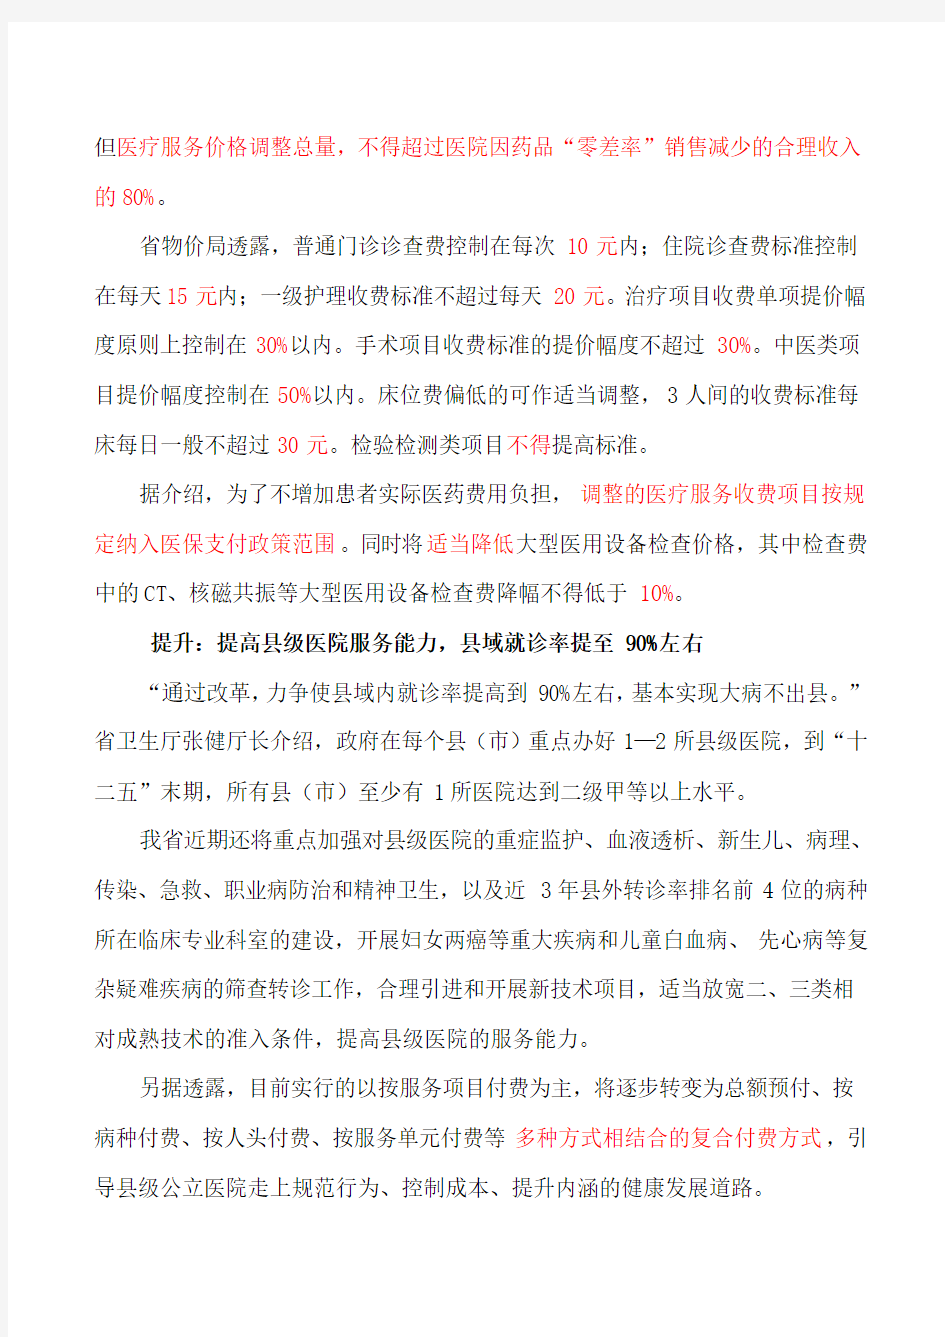 湖南8县(市)将试点县级公立医院综合改革各媒体报导